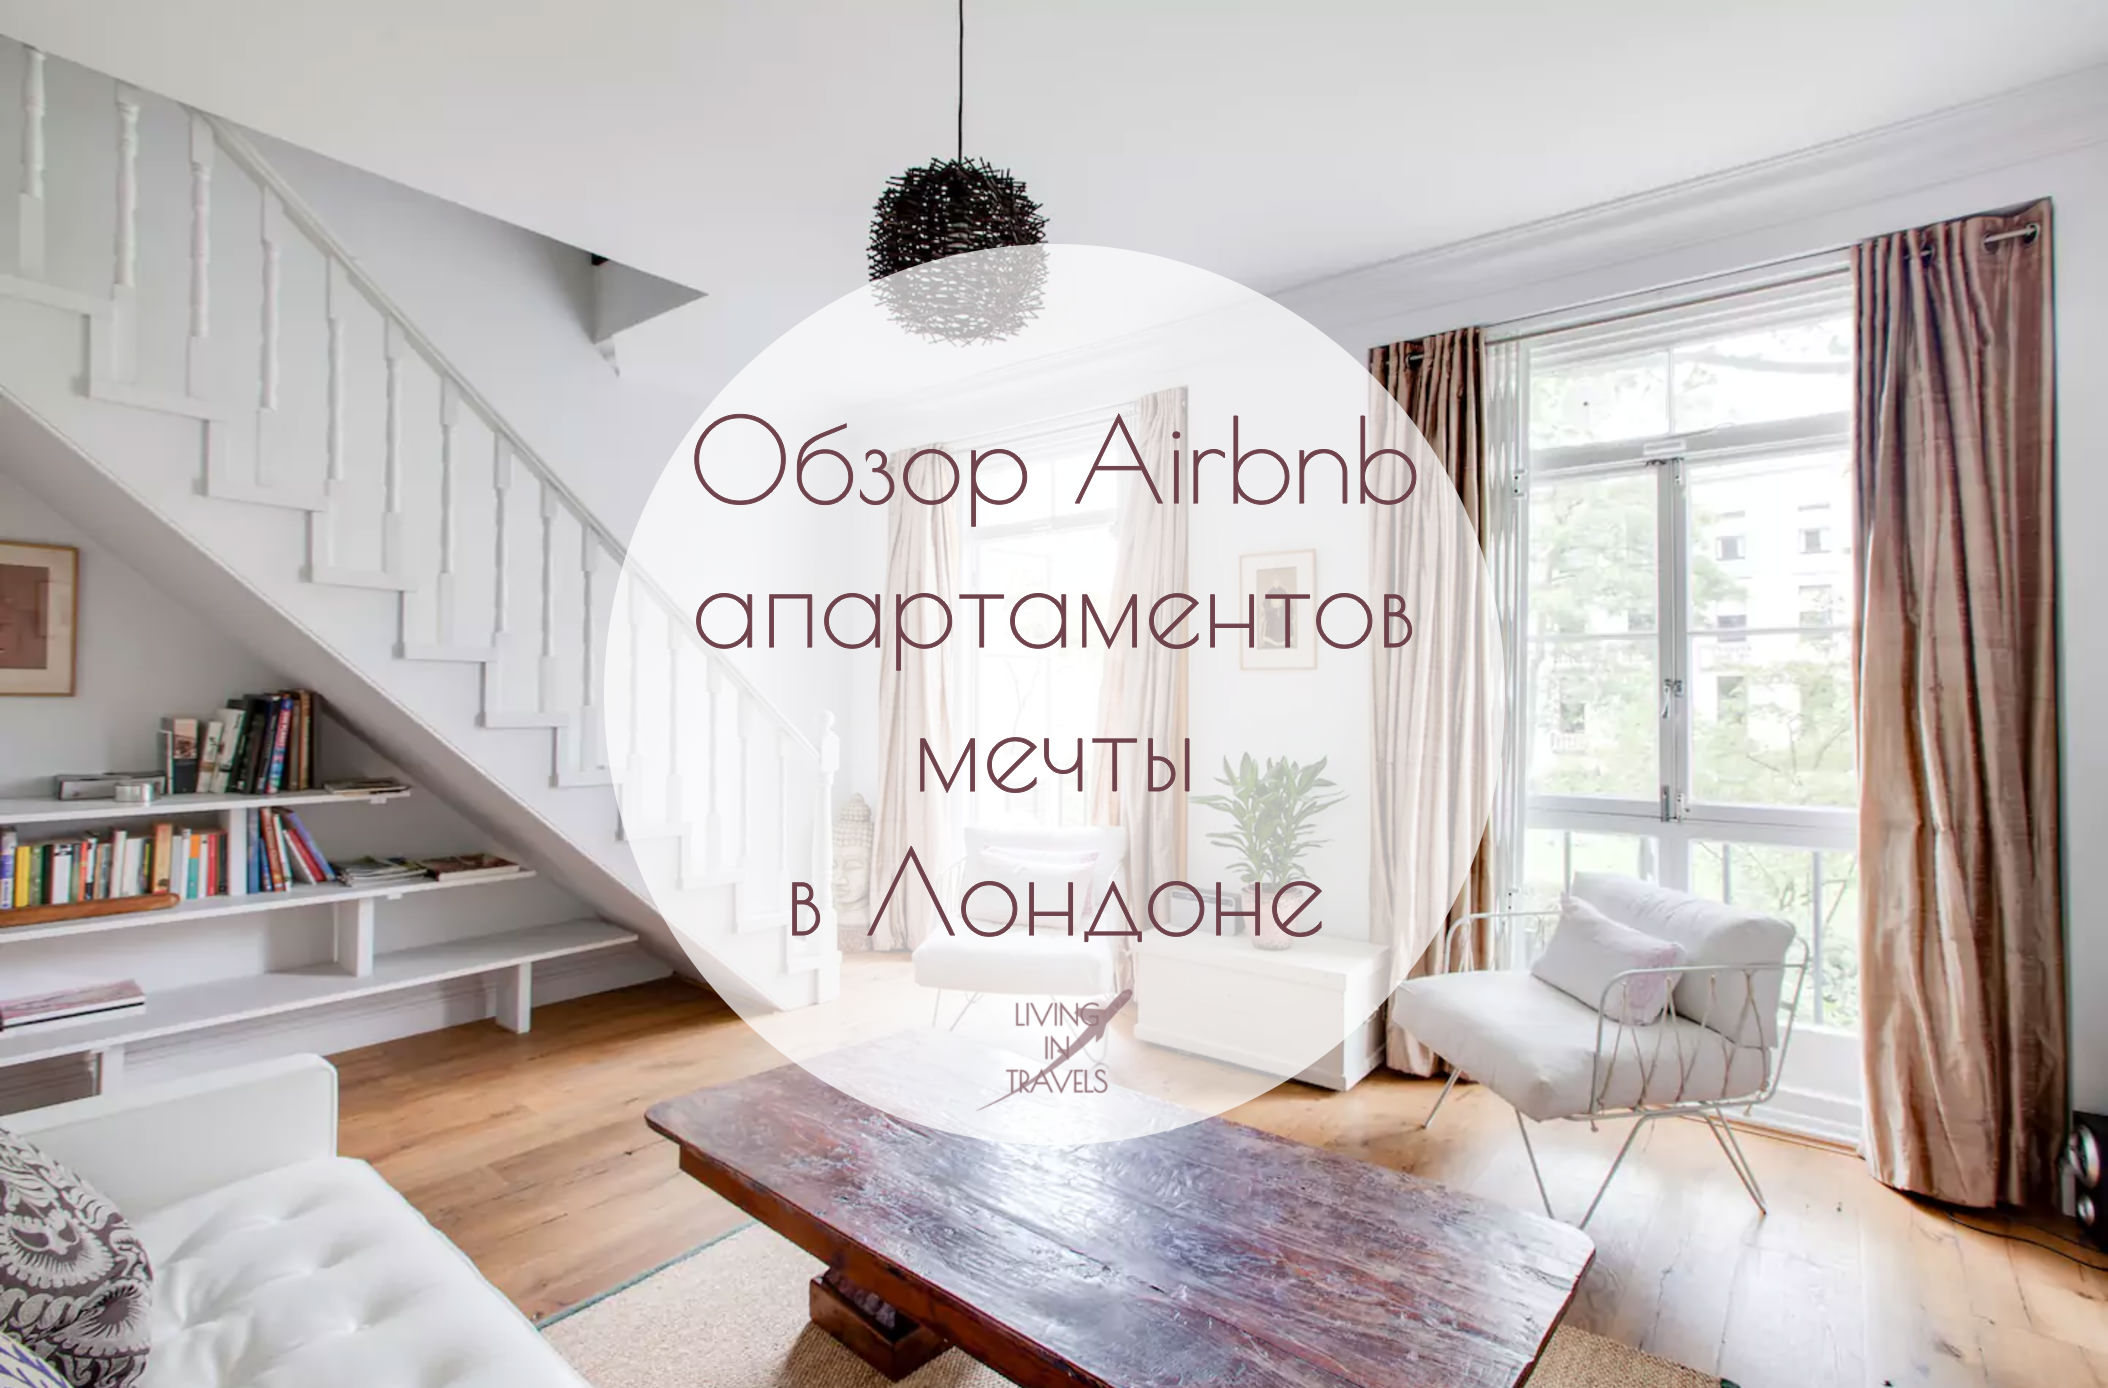 Обзор Airbnb апартаментов мечты в Лондоне